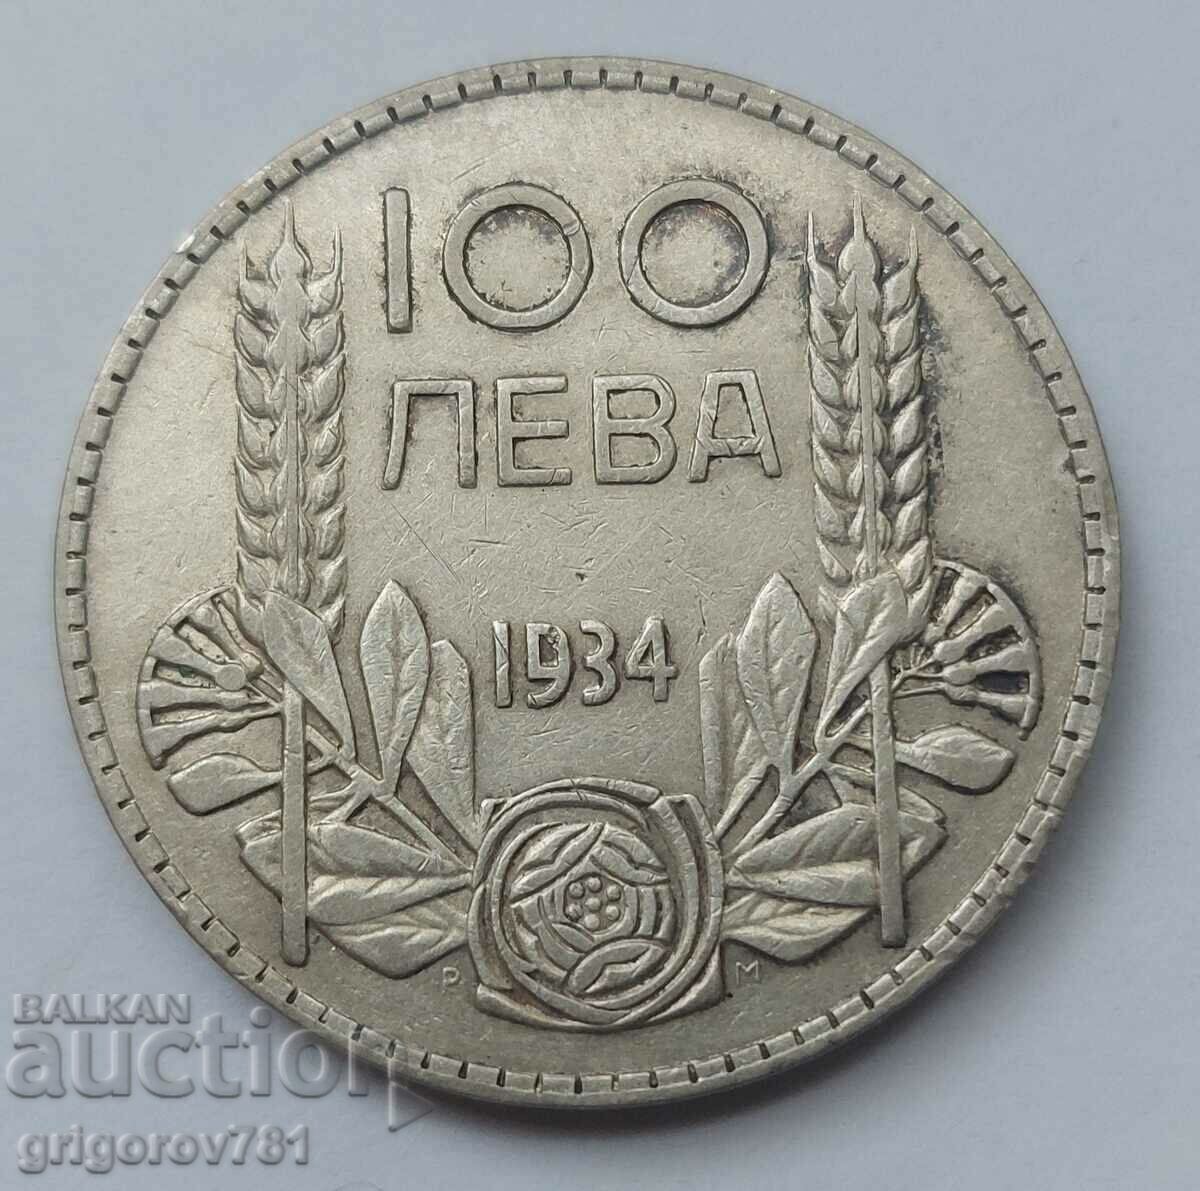 100 leva argint Bulgaria 1934 - monedă de argint #4